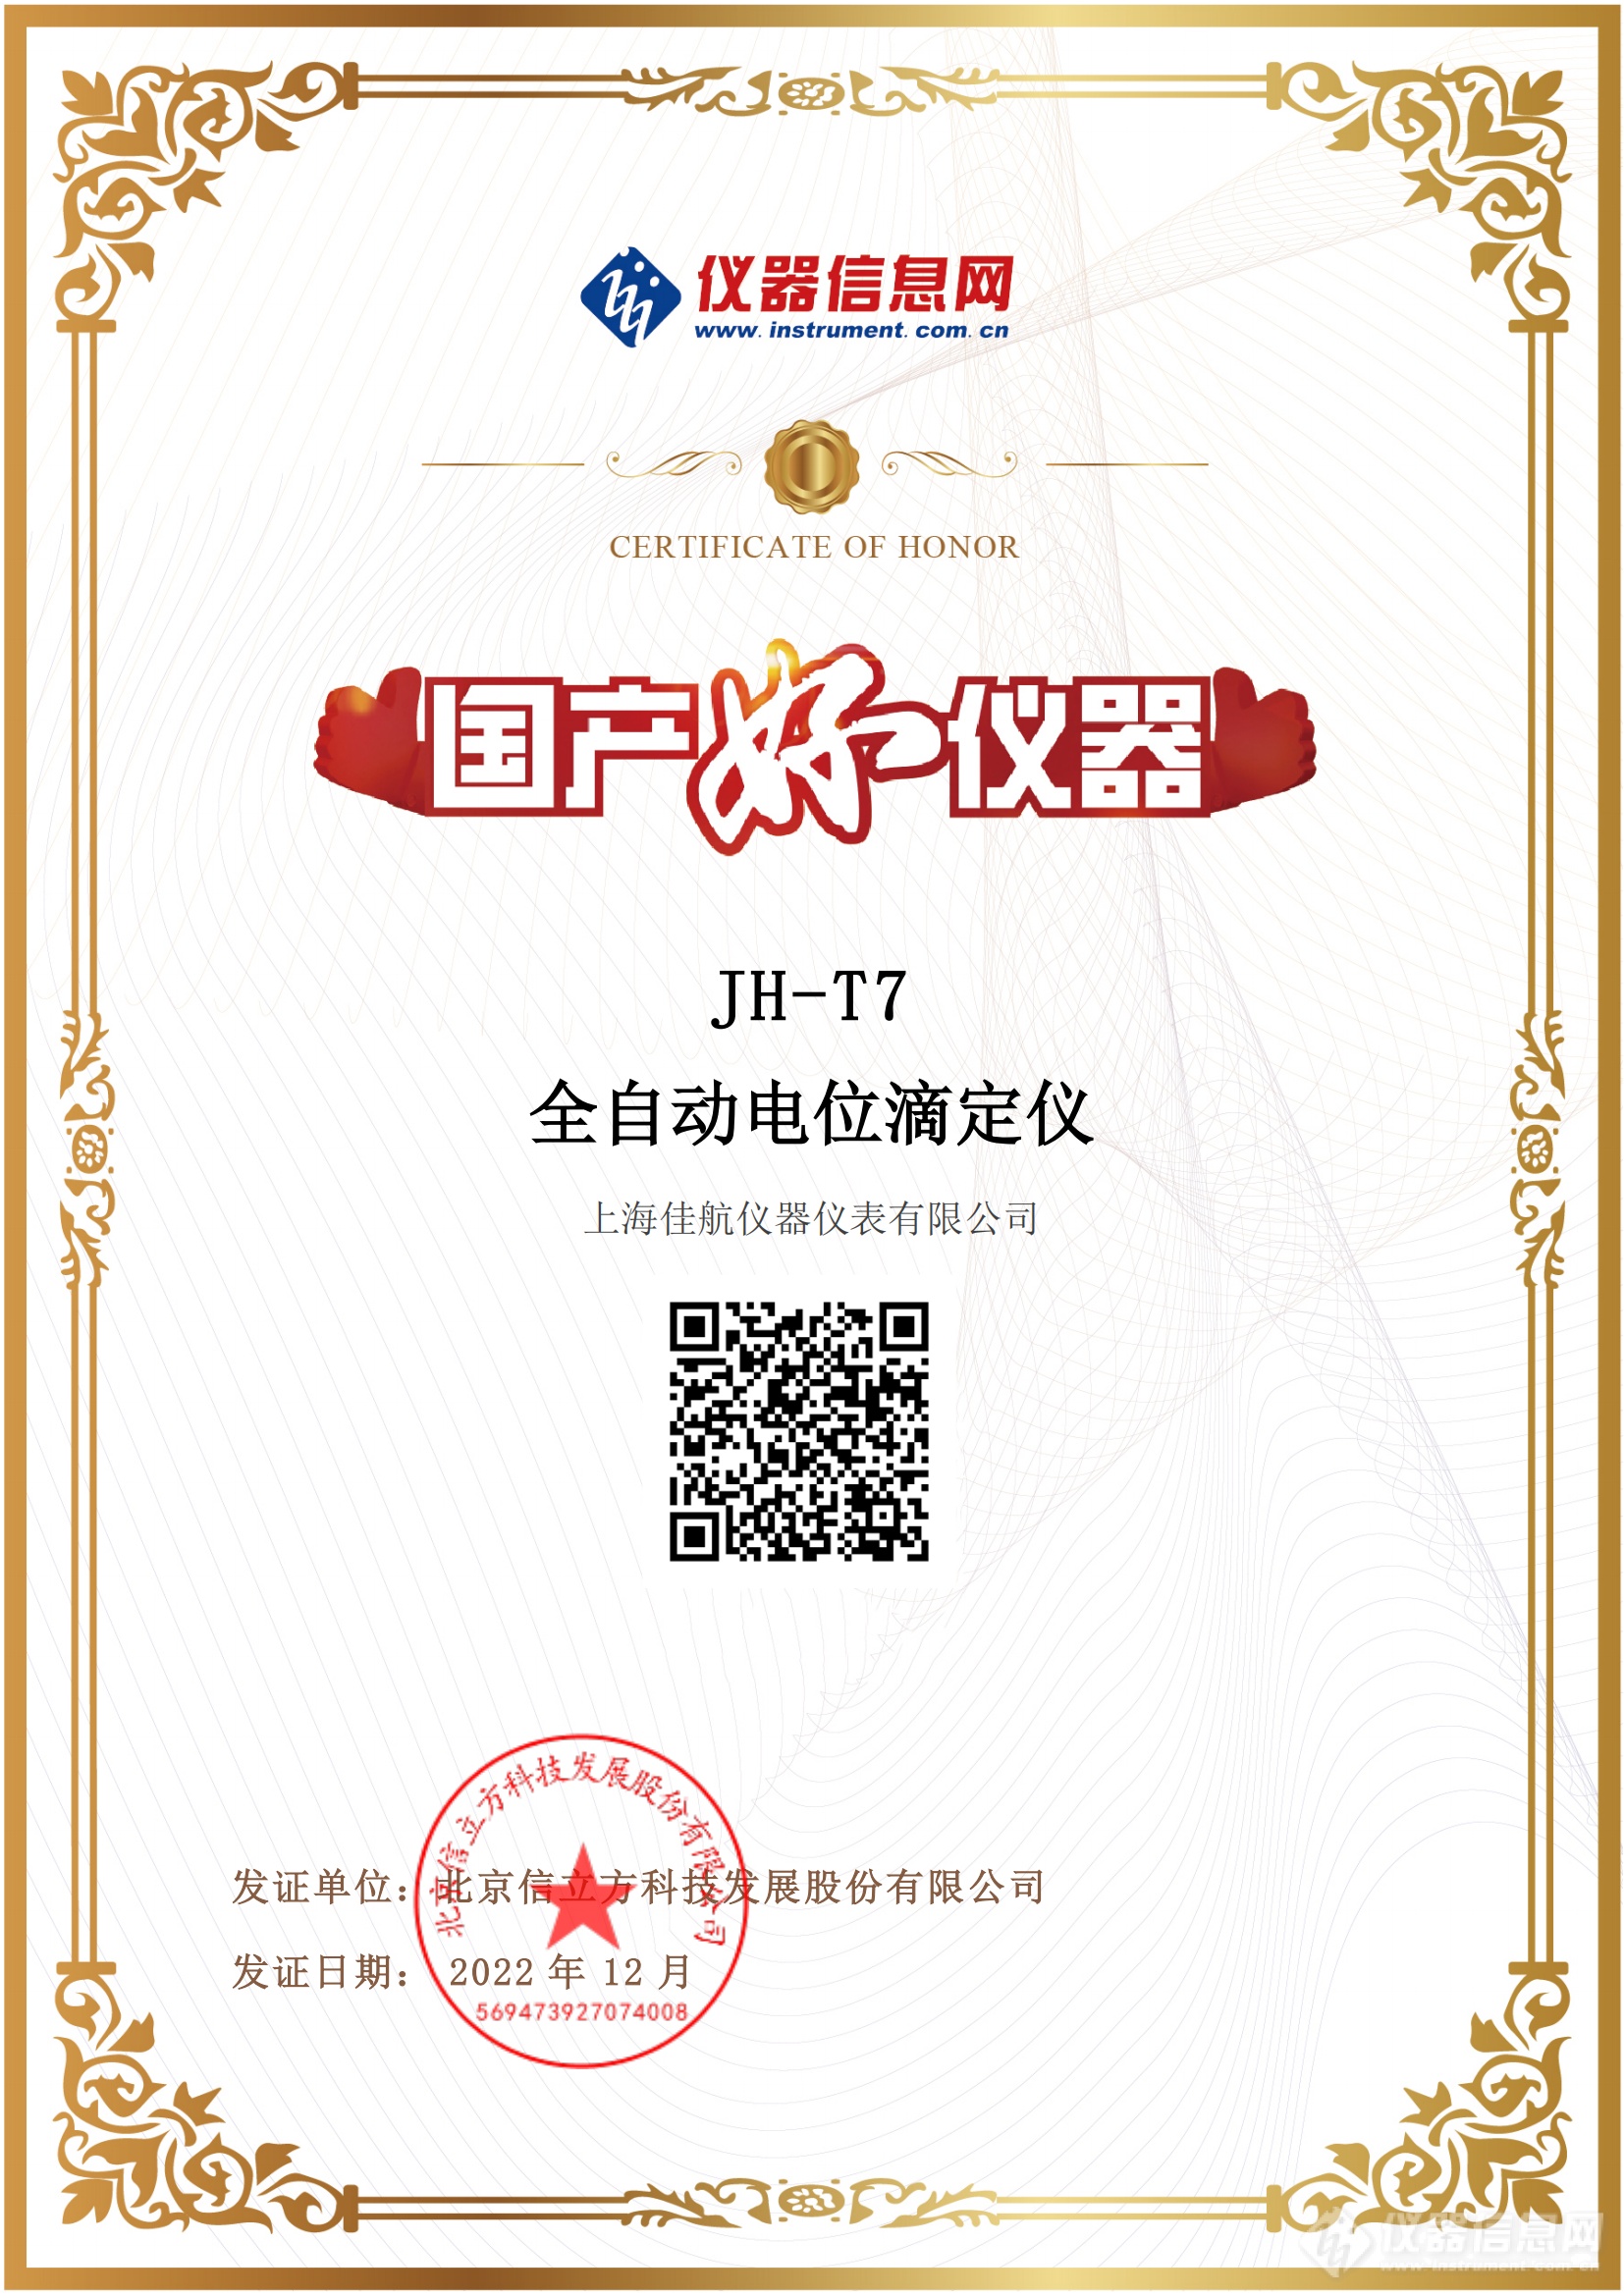 上海佳航JH-T7国产好仪器电子证书2022_00.png